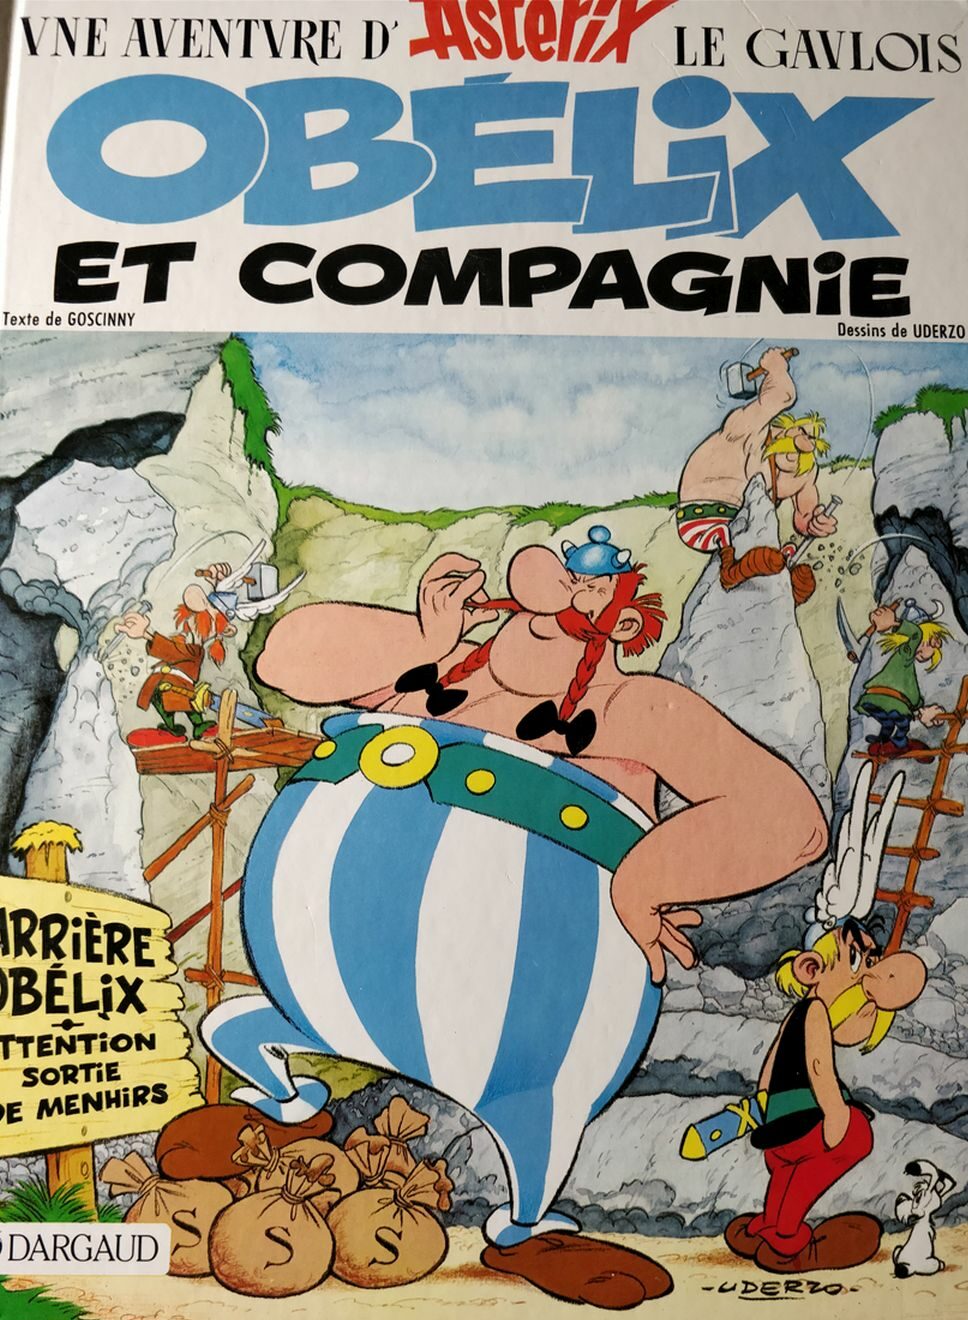 Foto von Asterix-Comic Buch in französischer Sprache